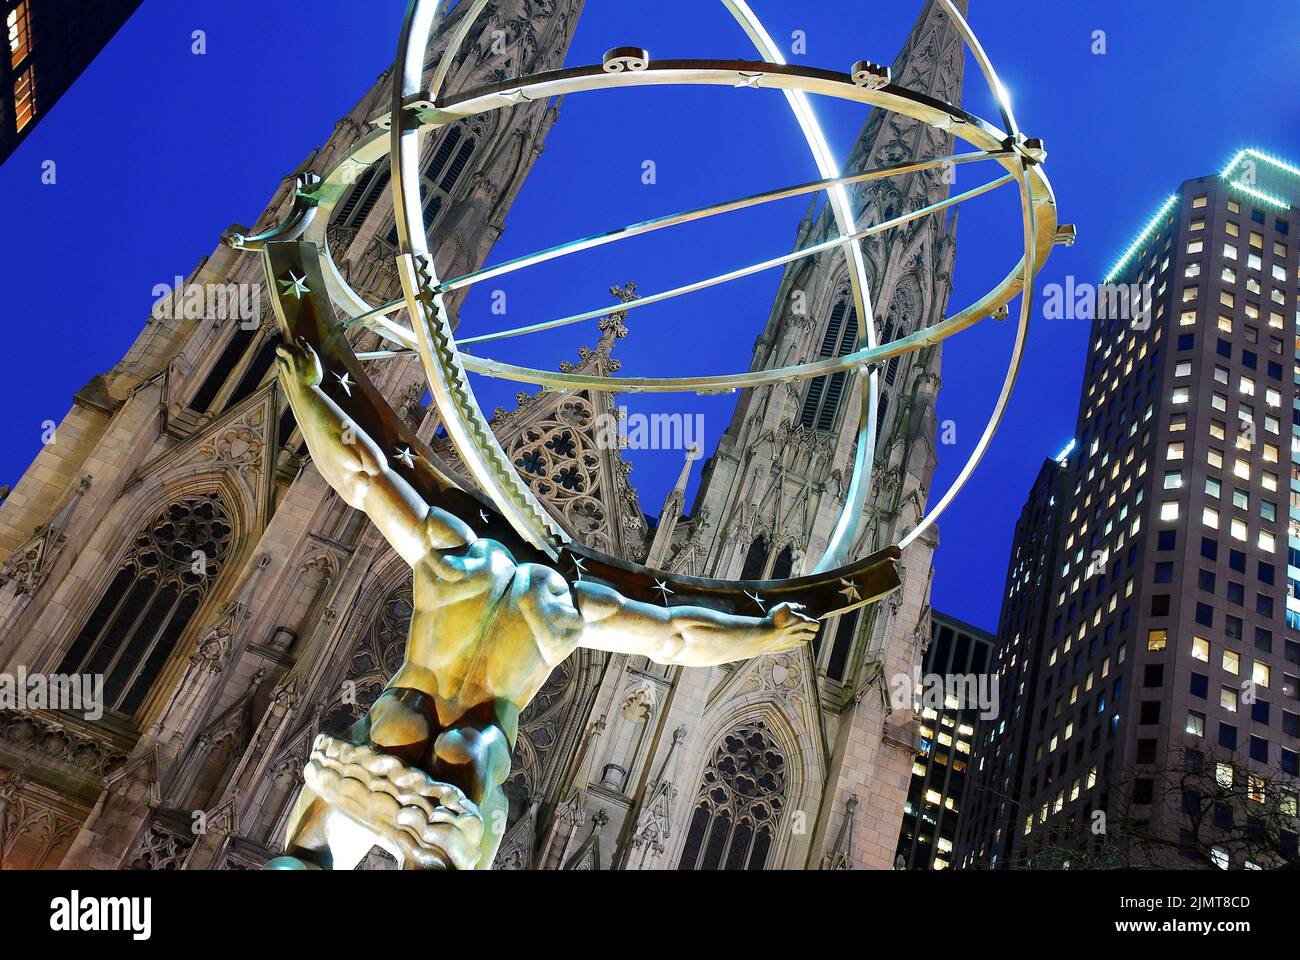 Une sculpture du god Atlas grec tenant le monde se trouve au Rockefeller Center, en face de la cathédrale St Patrick à New York Banque D'Images